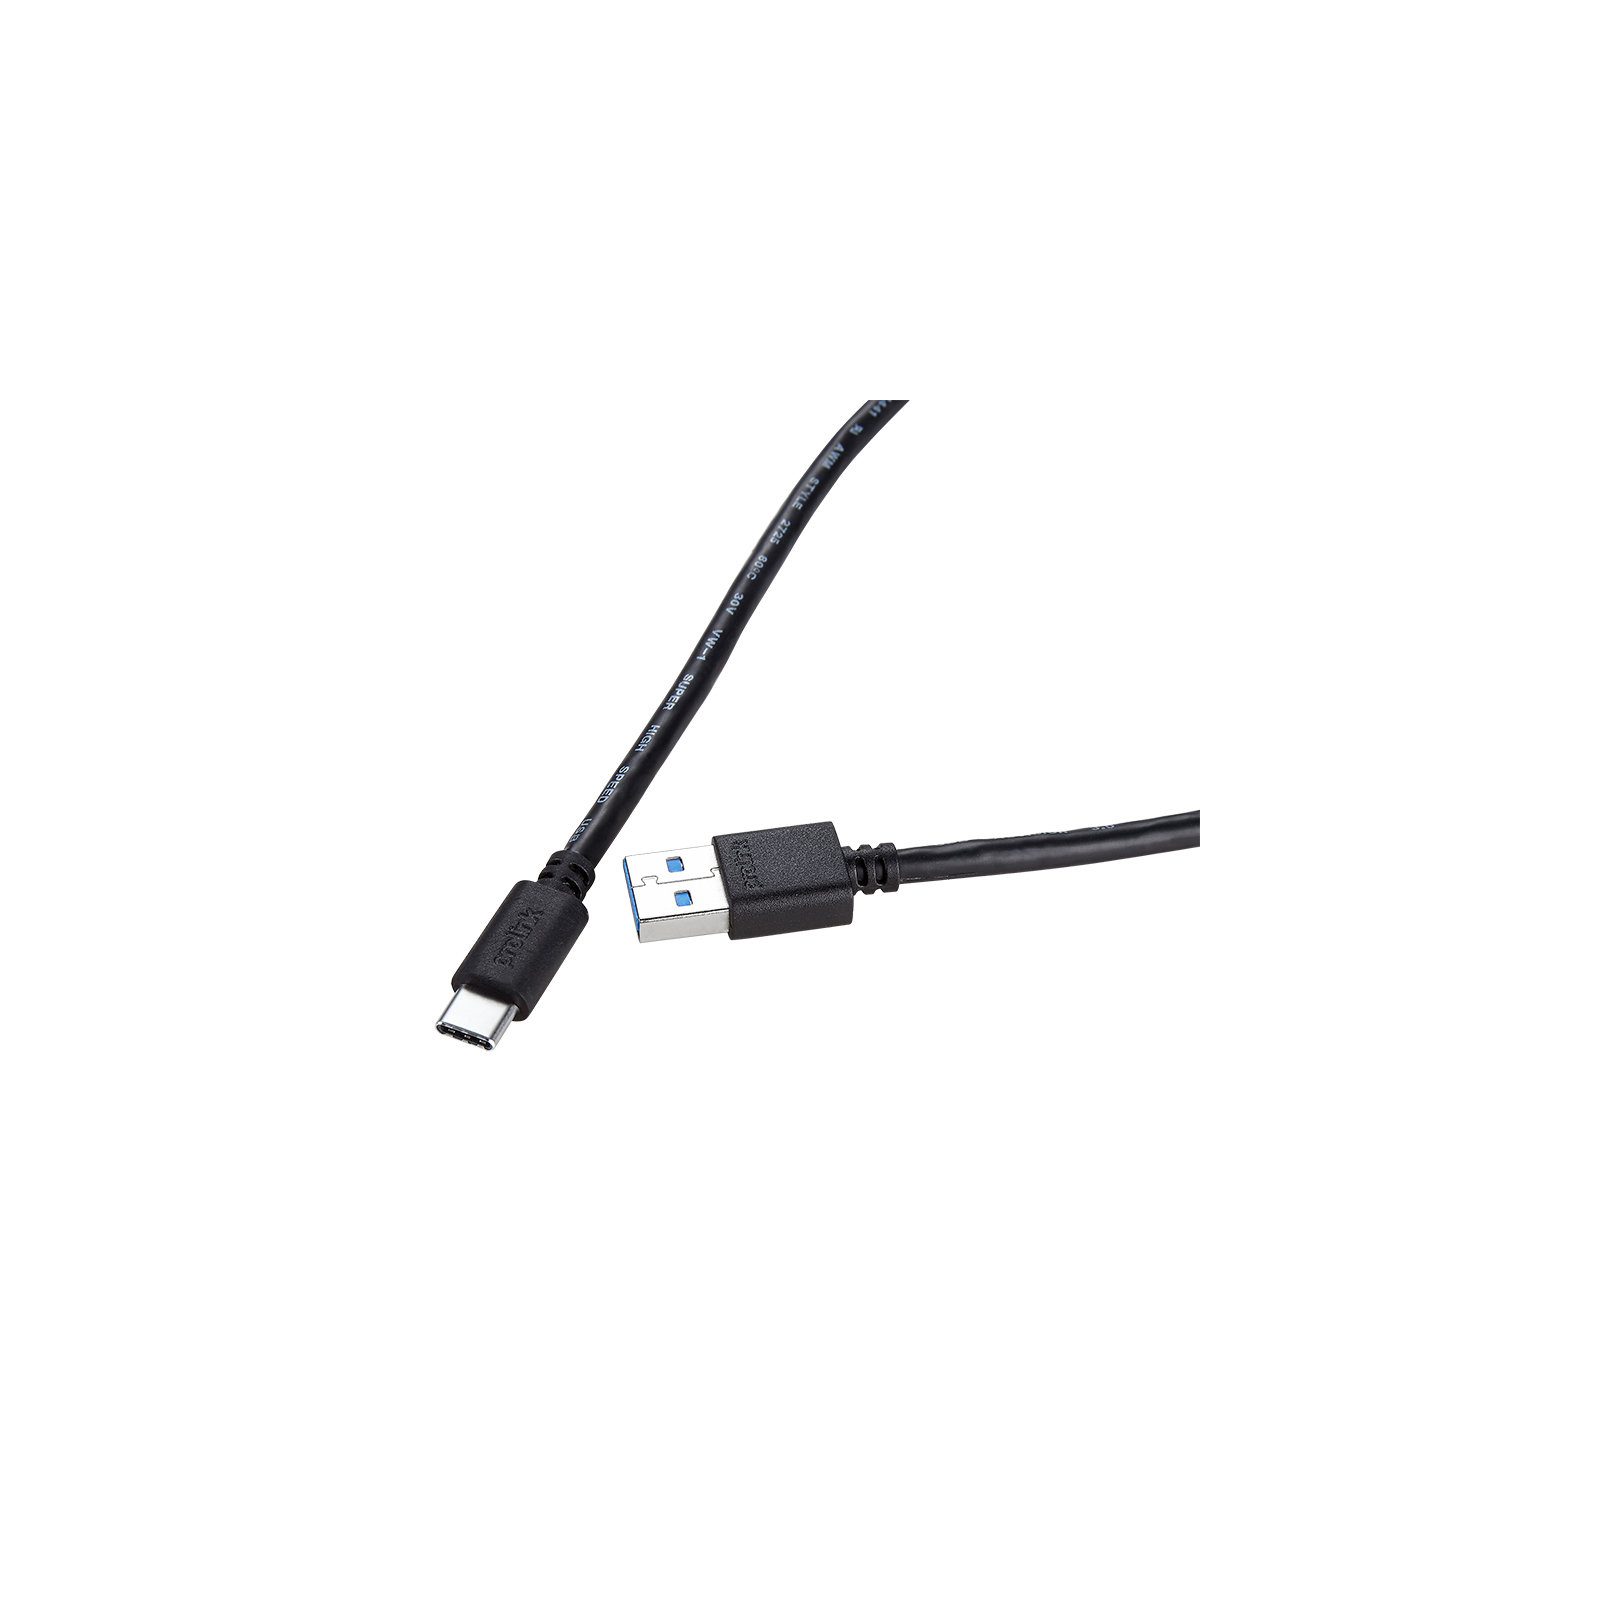 Дата кабель USB 3.0 Type-C to AM 1.0m Prolink (PB485-0100)